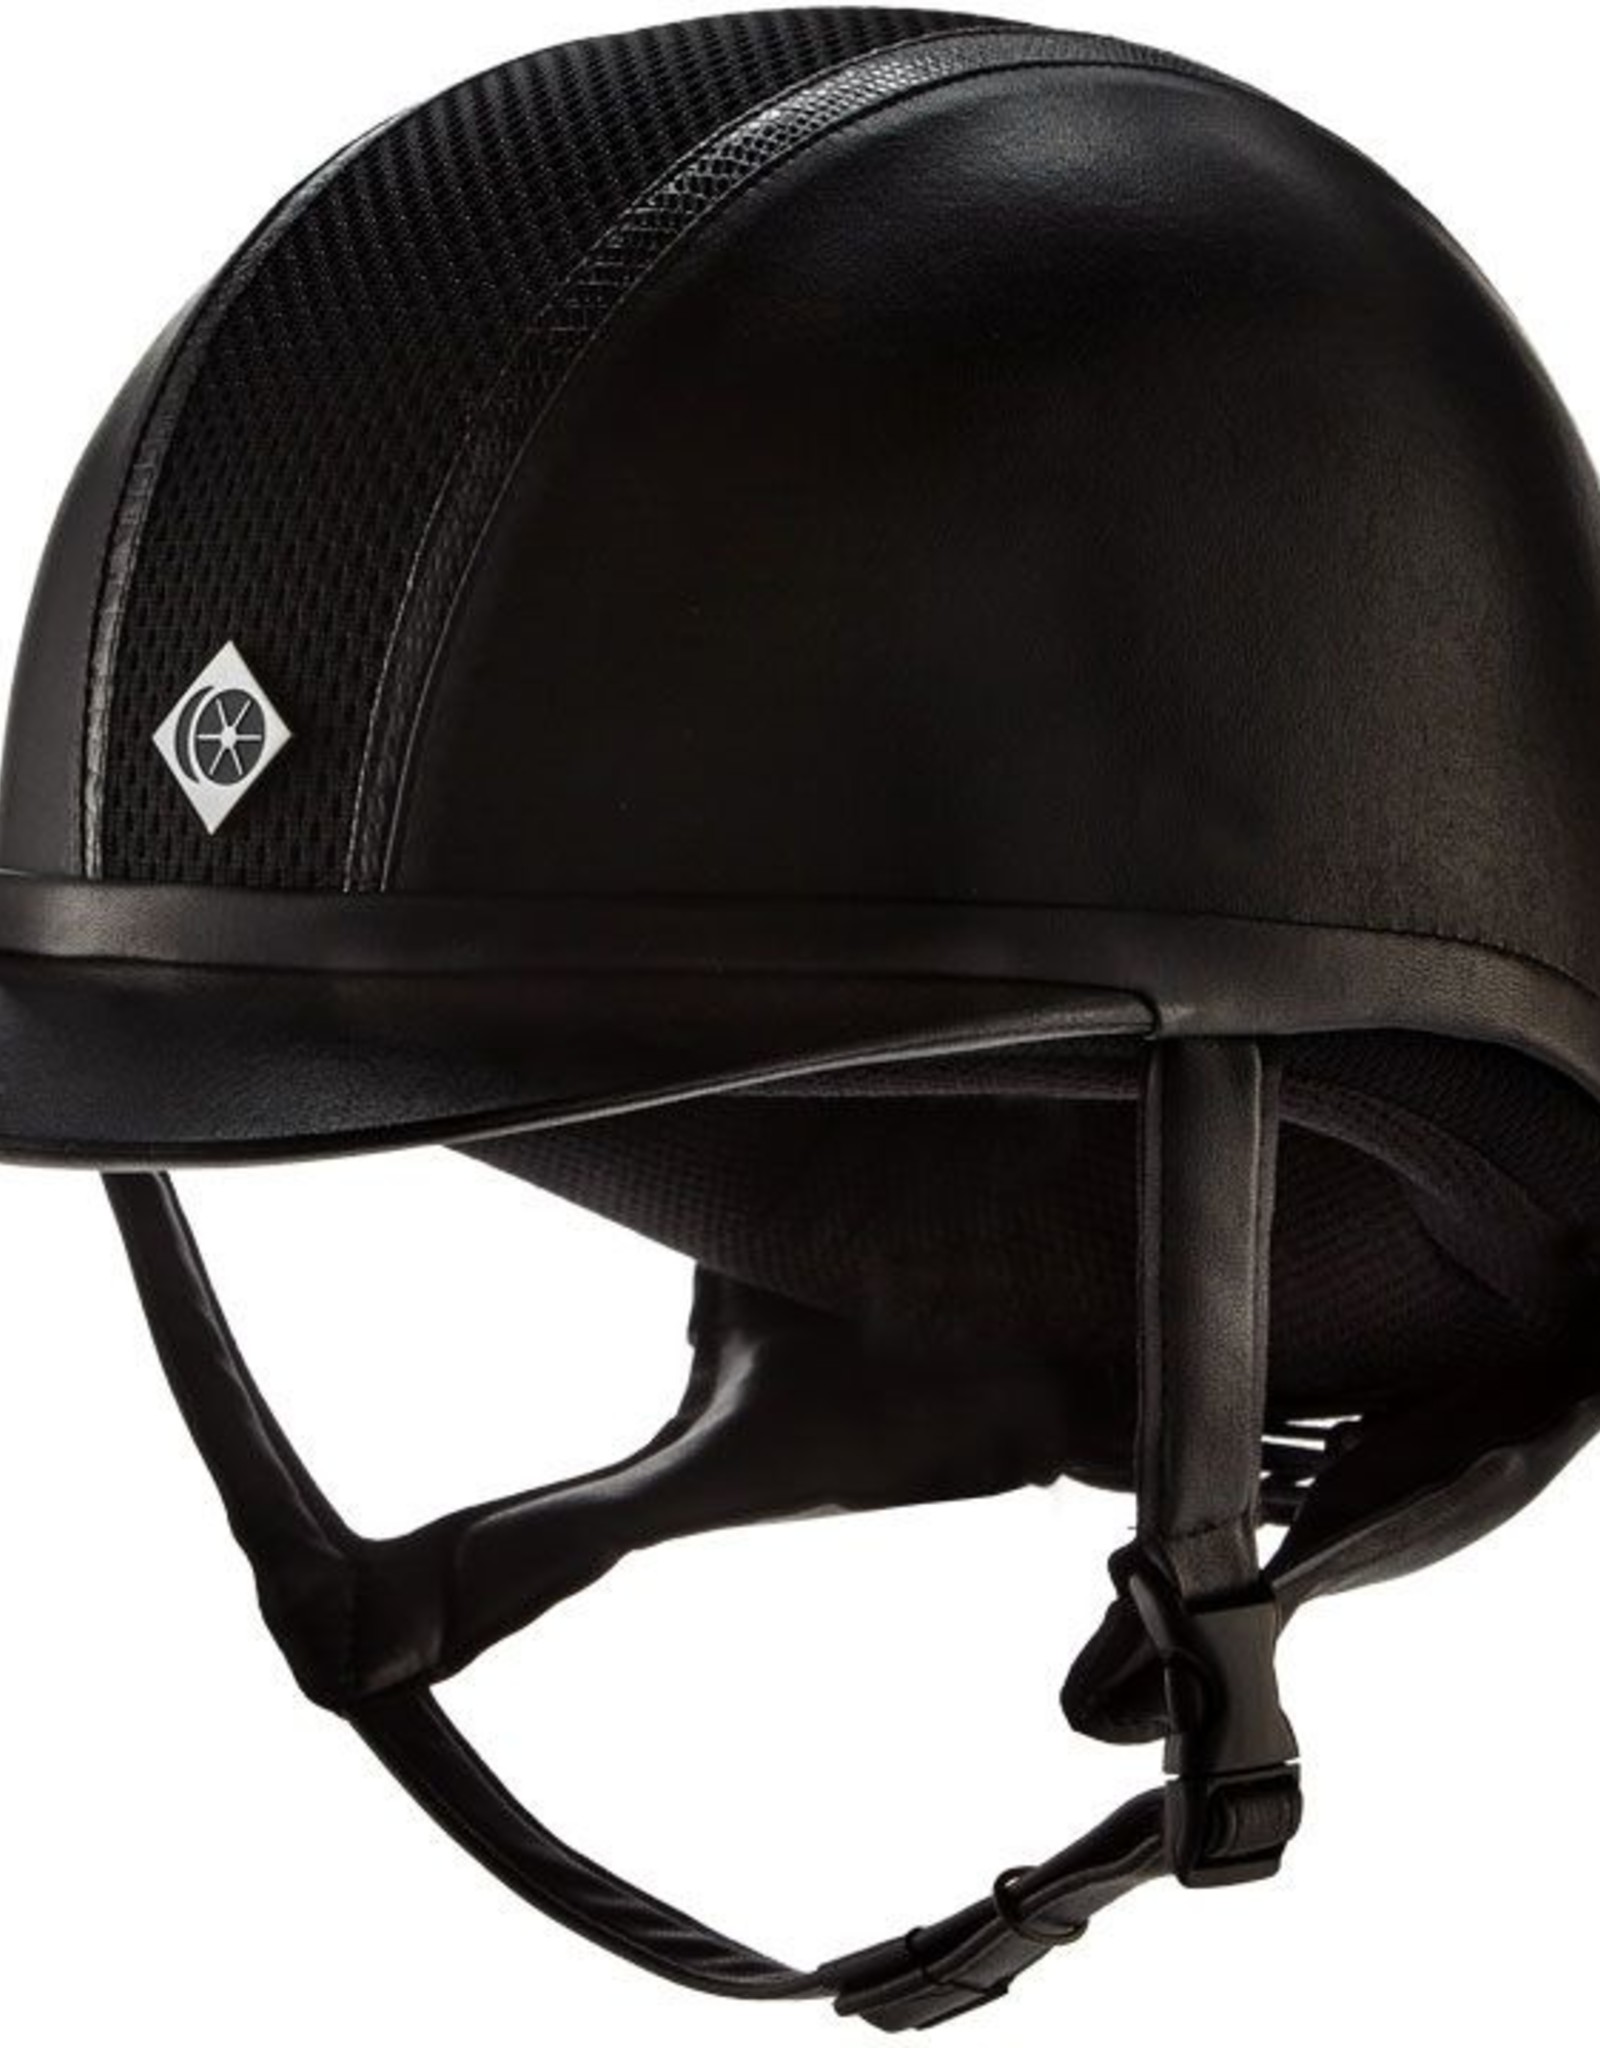 Charles Owen AYR8 Leather Look with Snakeskin Trim Helmet